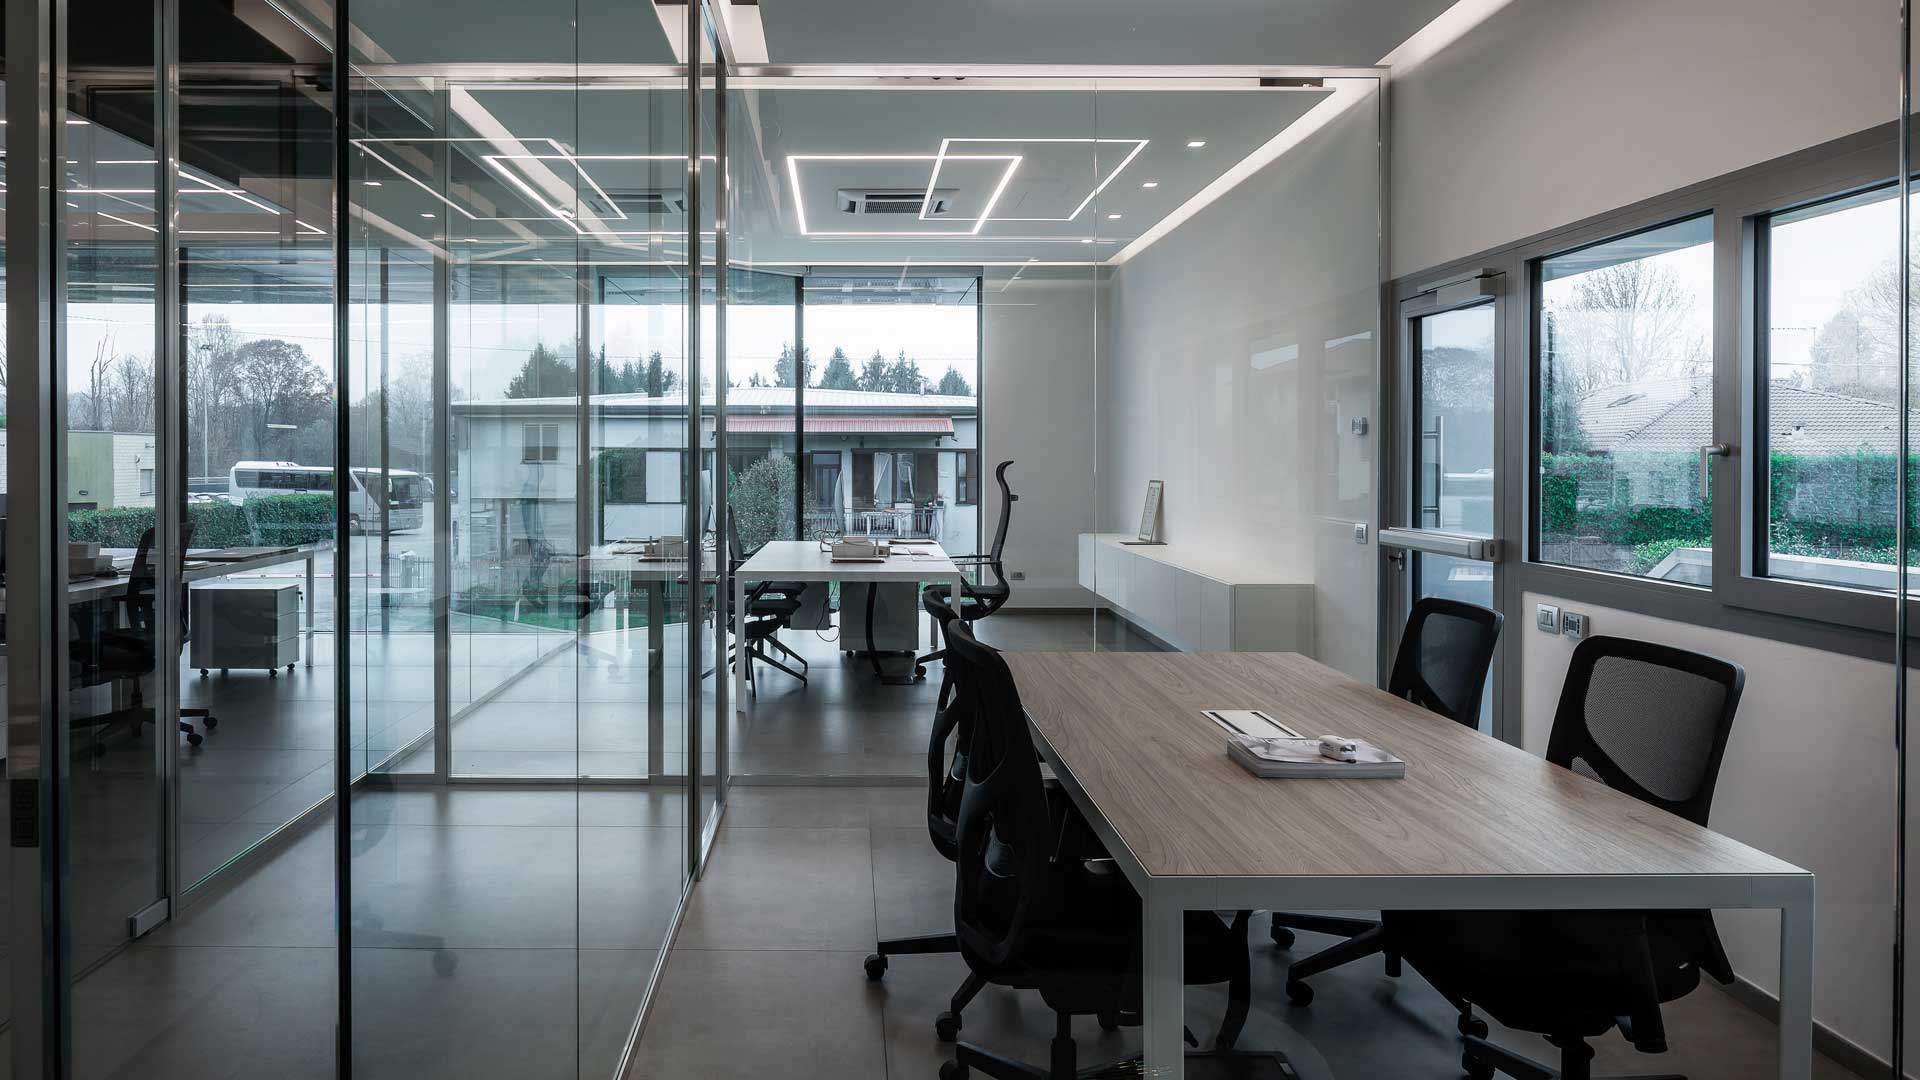 migliorare-ambiente-lavorativo-pareti-divisorie-vetrate-level-office-landscape